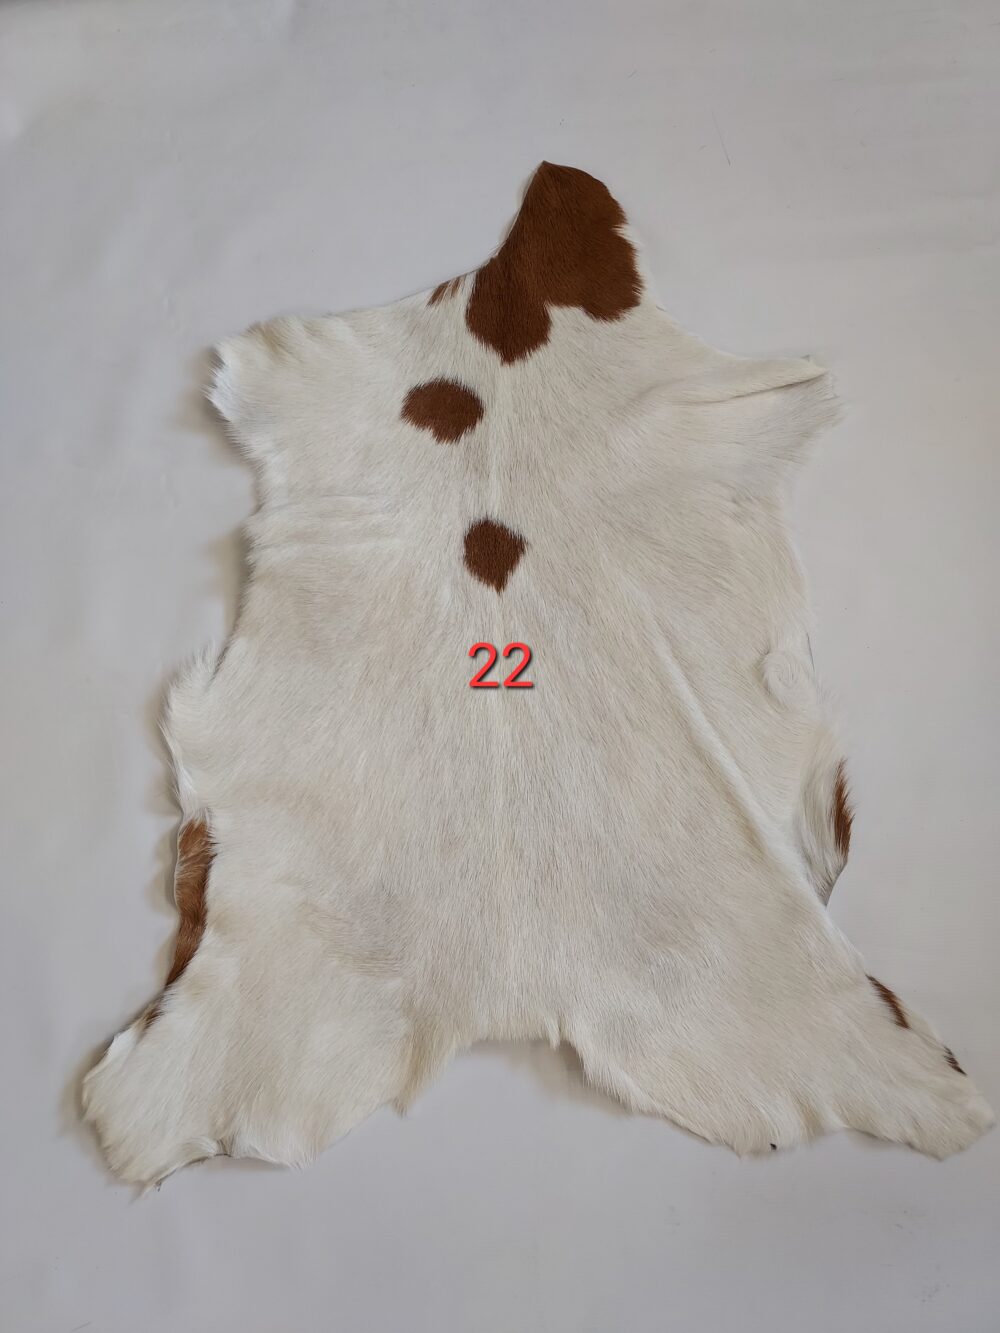 Decorative goat skin Decorative skins Producent owczych skór dekoracyjnych | Tannery Sheepskin | KalSkór 20